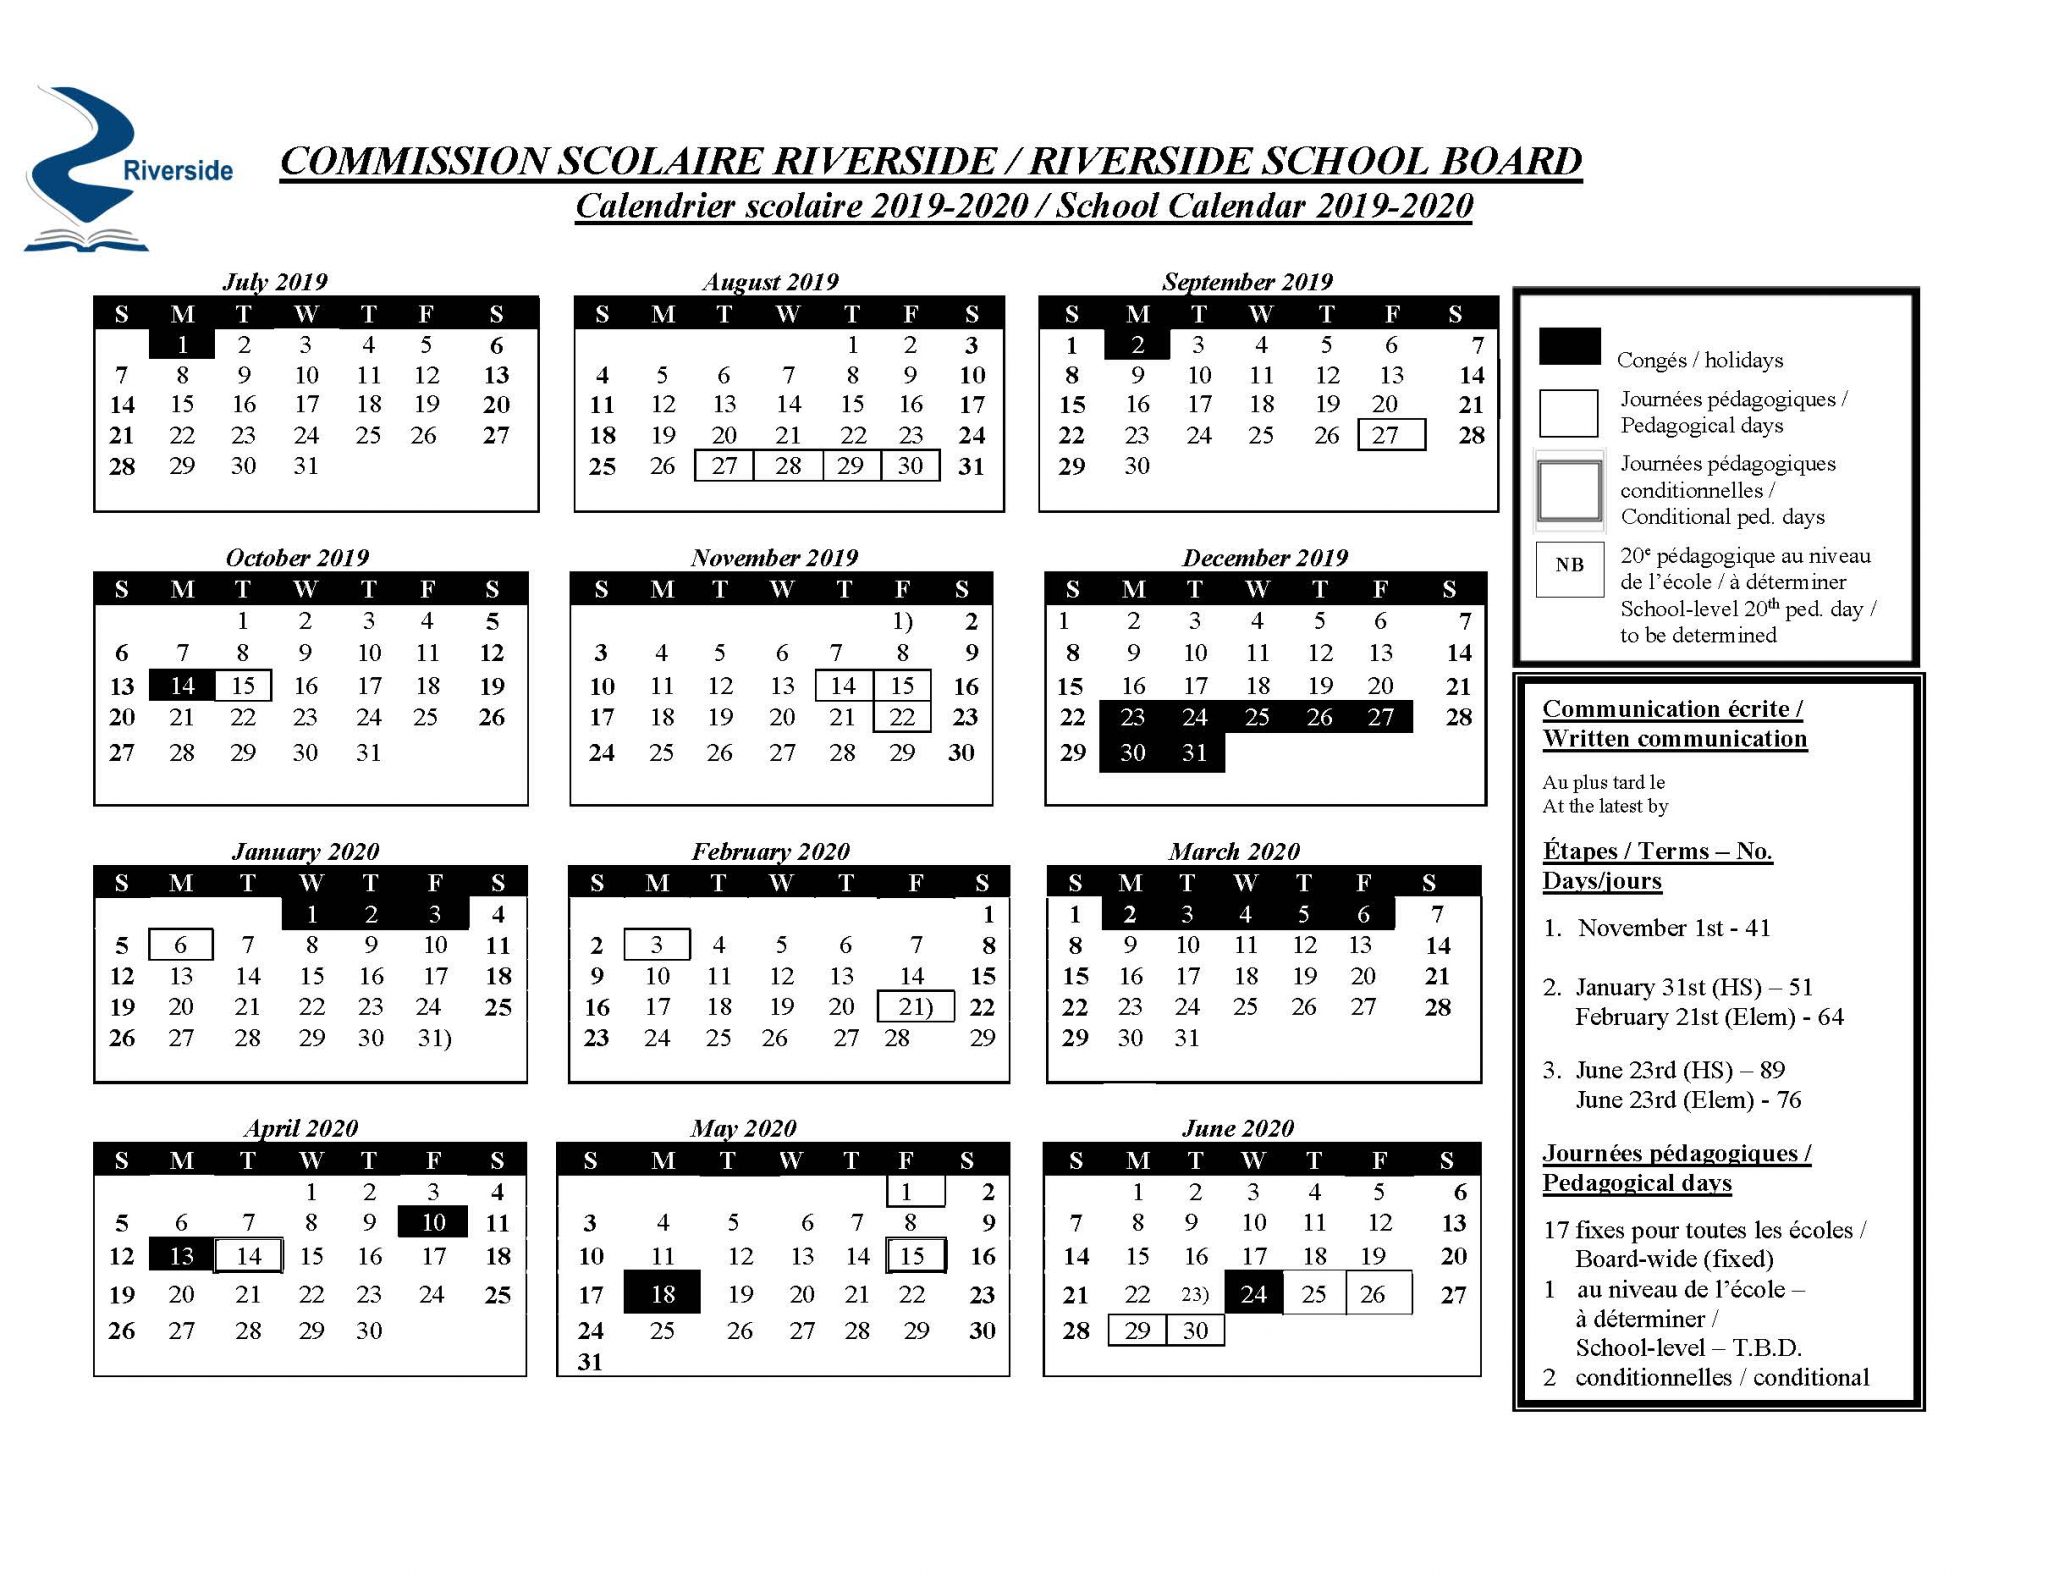 Riverside School Board Calendar 2020